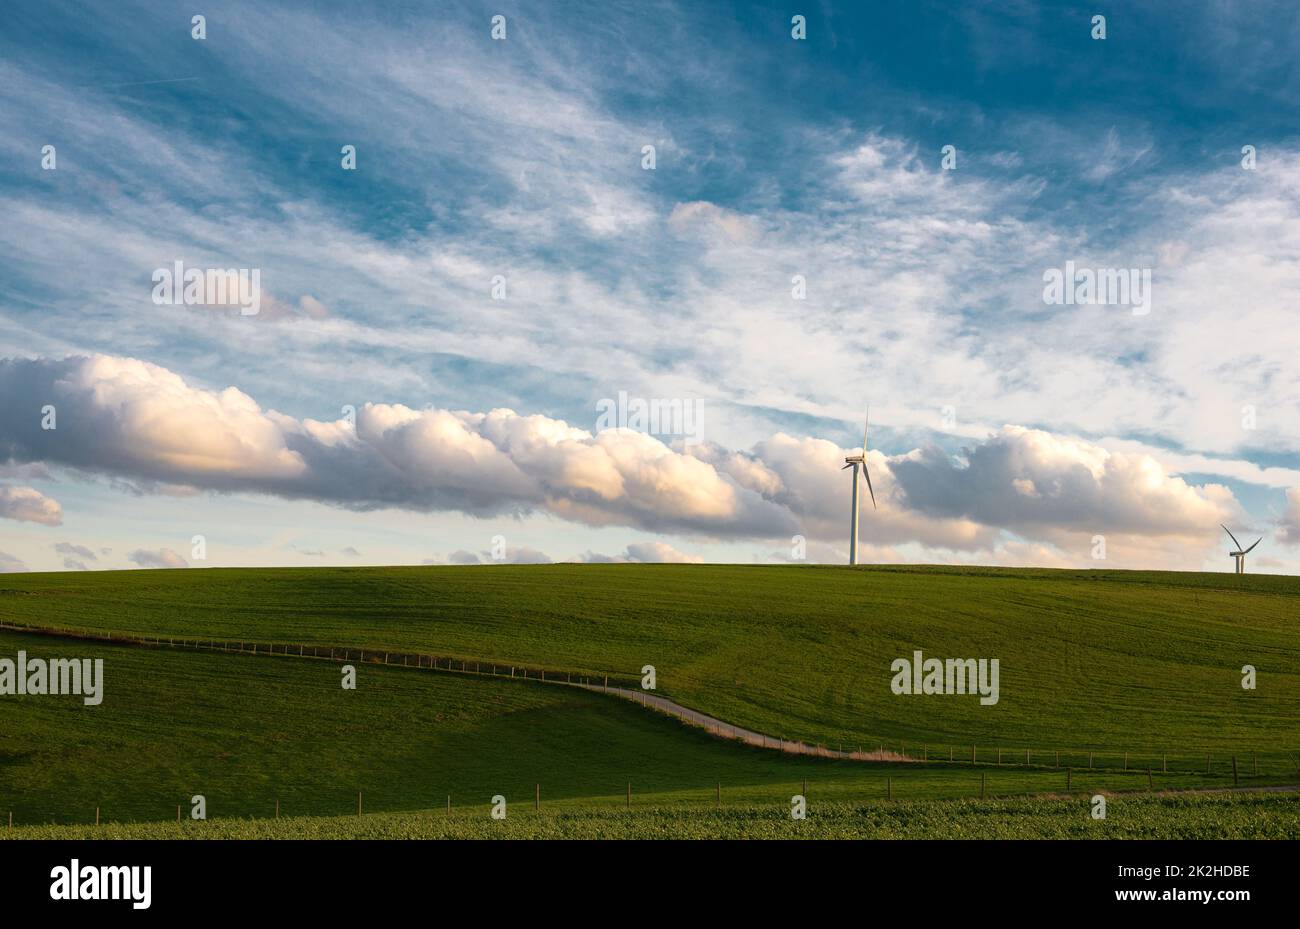 Sturmwetter im Frühling, Wolken am Himmel, grüne Wiese, Landwirtschaft in Deutschland, Landschaft, Wind- und Umweltdiskussion, Landschaftsszene Stockfoto